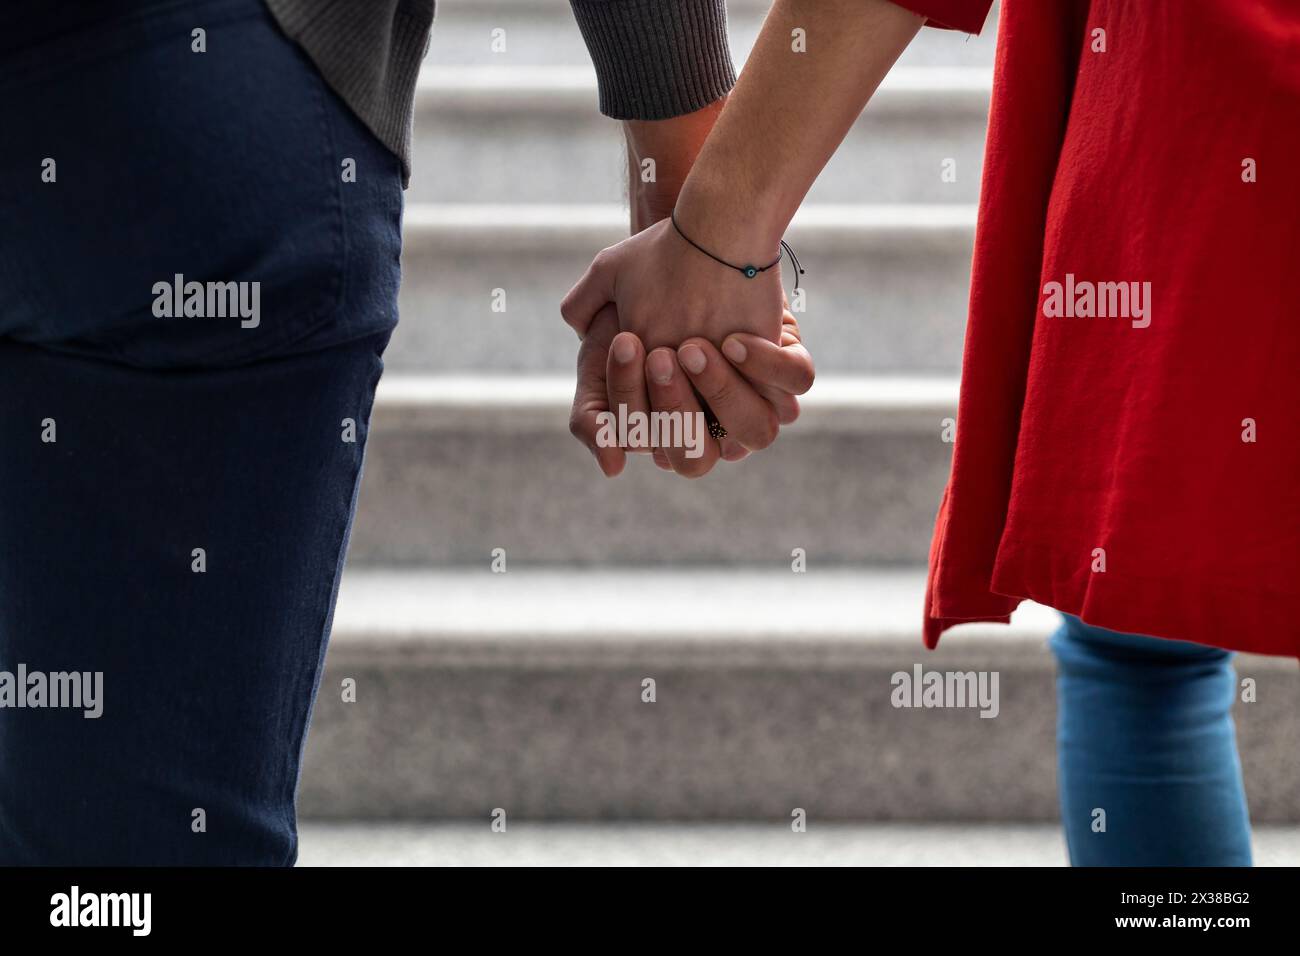 Unerkennbares, junges lateinamerikanisches Paar, das rückwärts geht und Hände hält. Mittlere Nahaufnahme ihrer ineinander verflochtenen Hände. Konzept von Liebe und Relaxatio Stockfoto